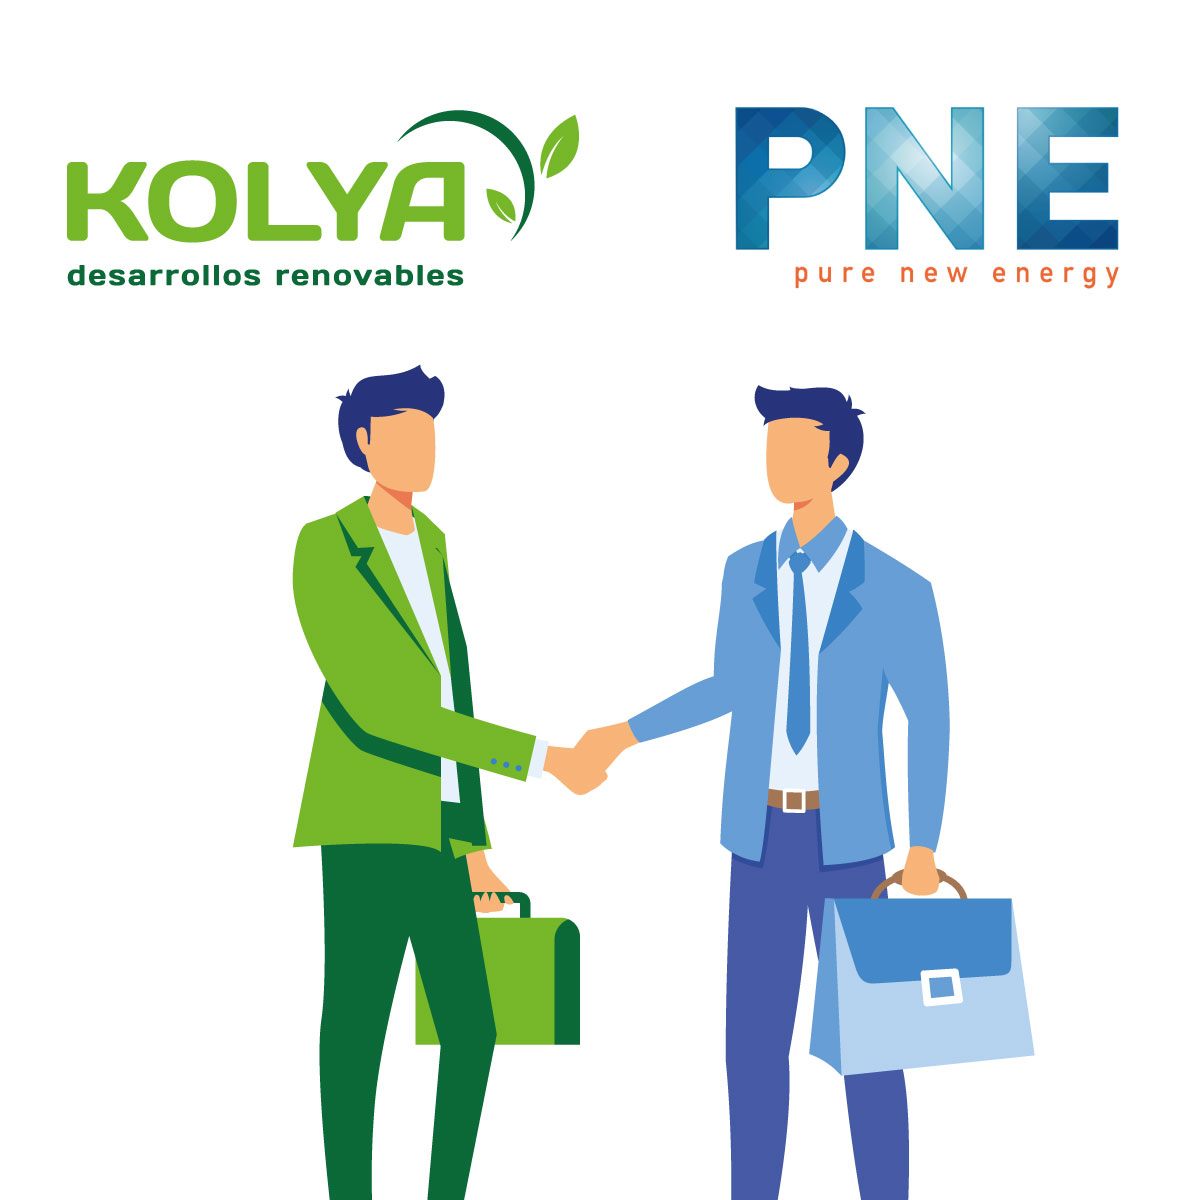 La alemana PNE entra en España con la compra del 51% de Kolya